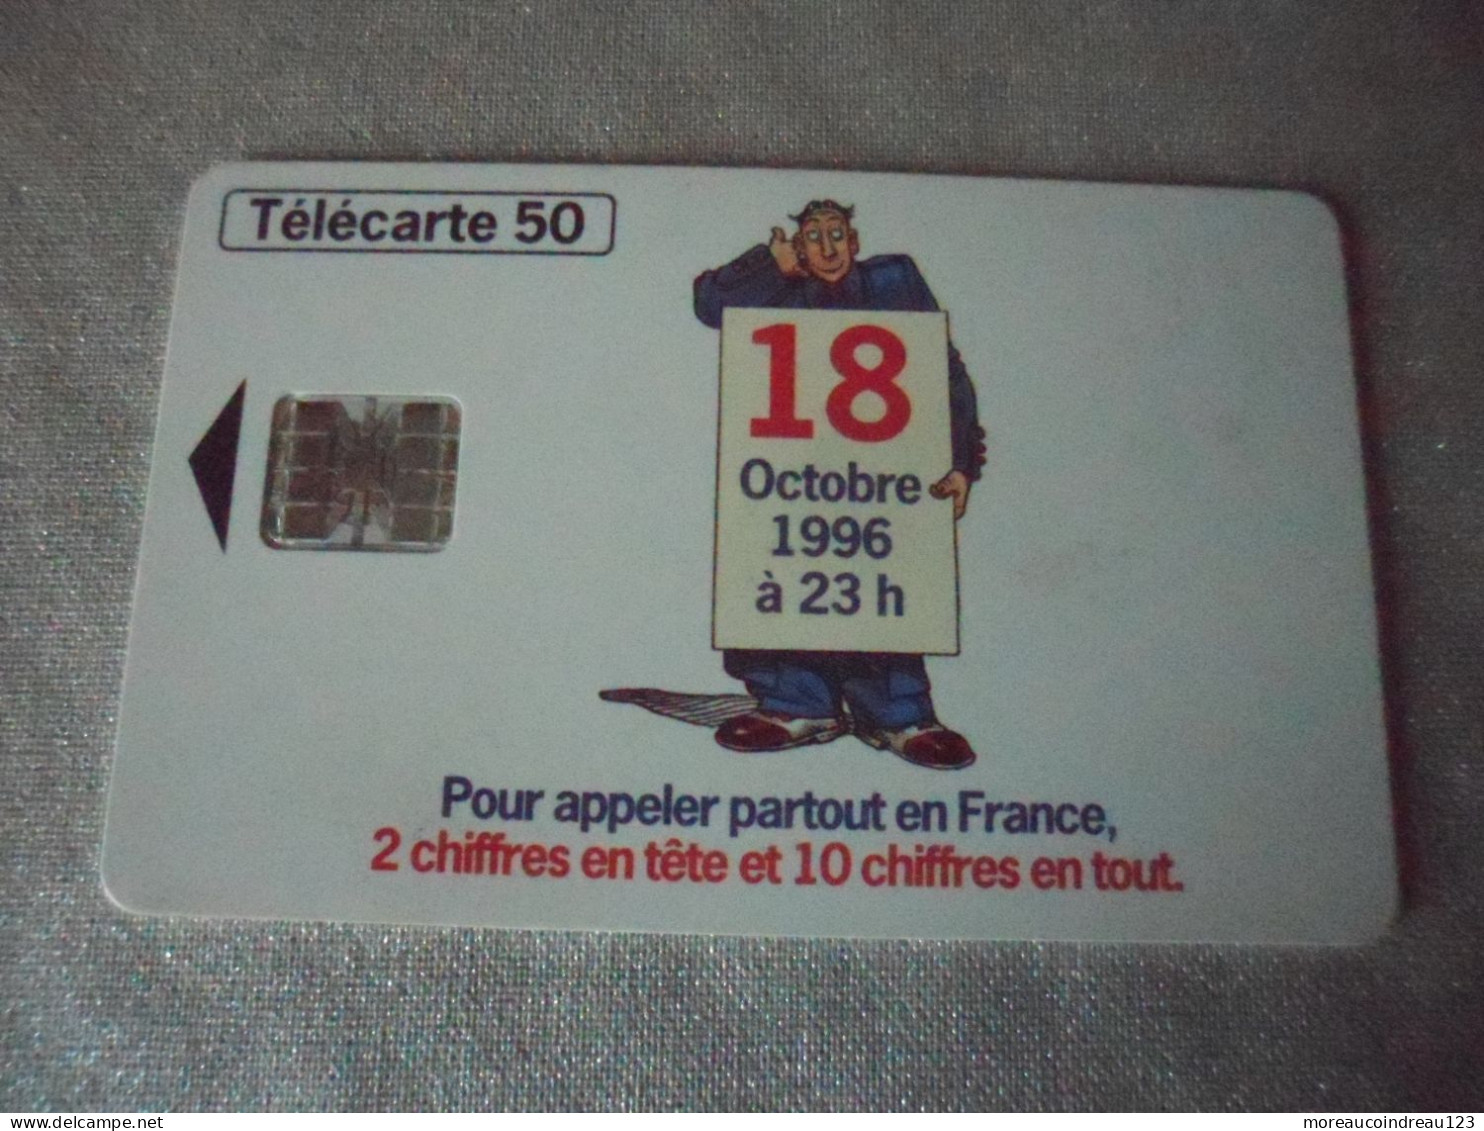 Télécarte Numérotation A 10 Chiffres "18" - Opérateurs Télécom